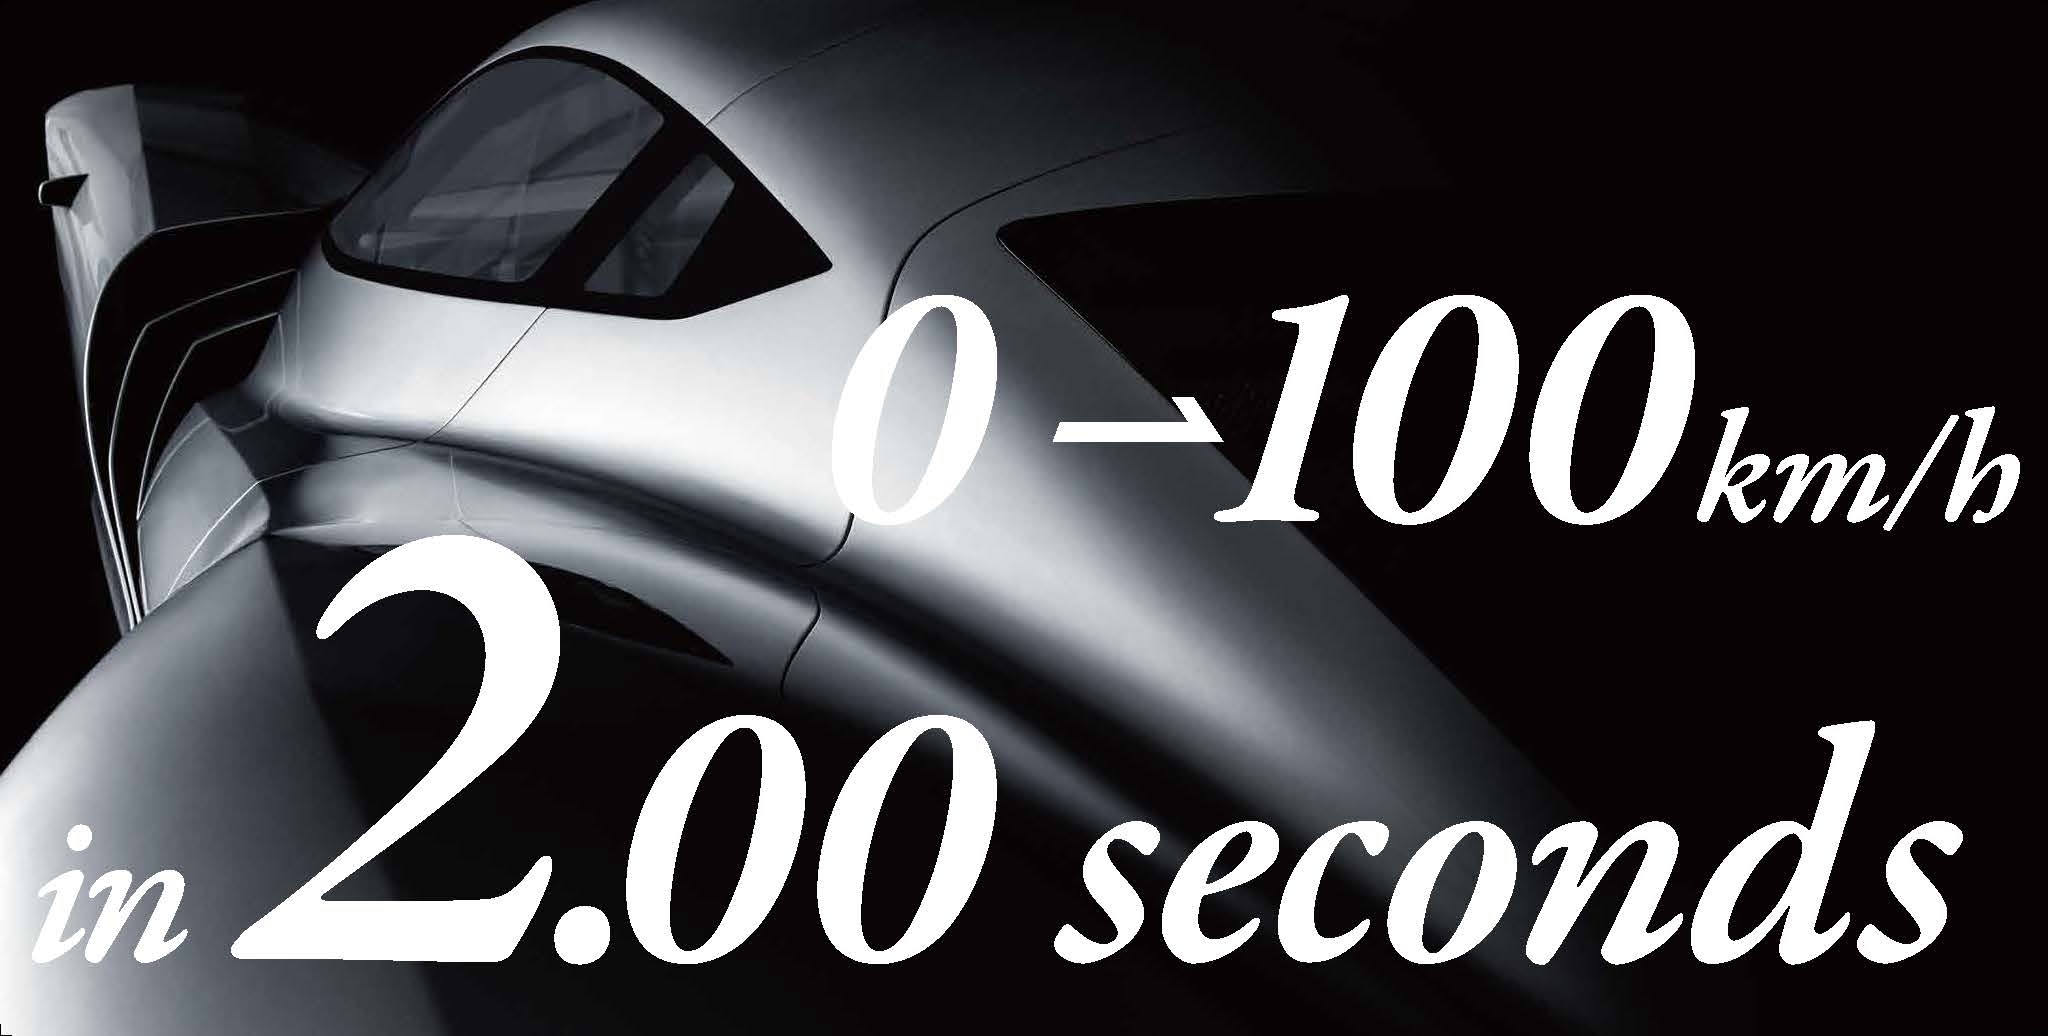 Er Aspark Owl den raskeste bilen på planeten?